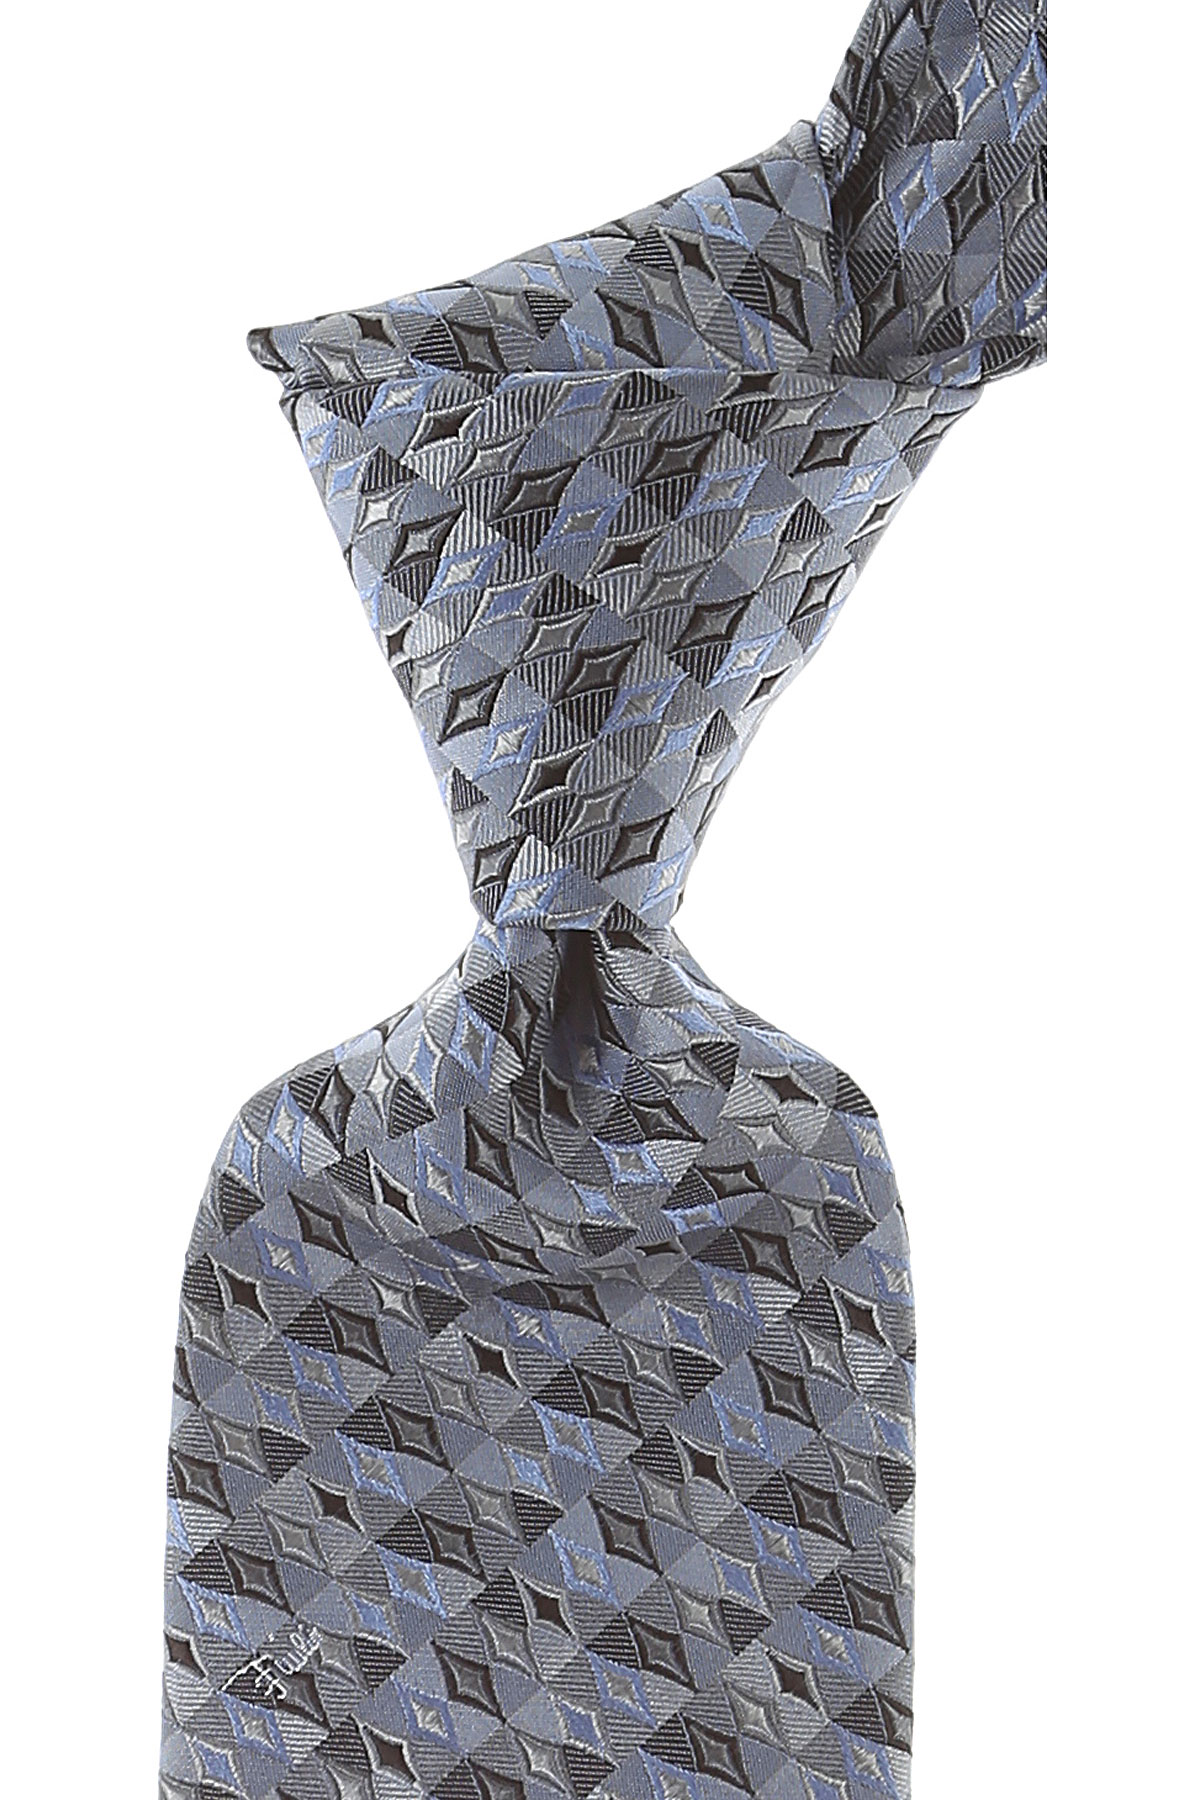 Cravates Emilio Pucci , Bleu ciel clair poussié, Soie, 2017